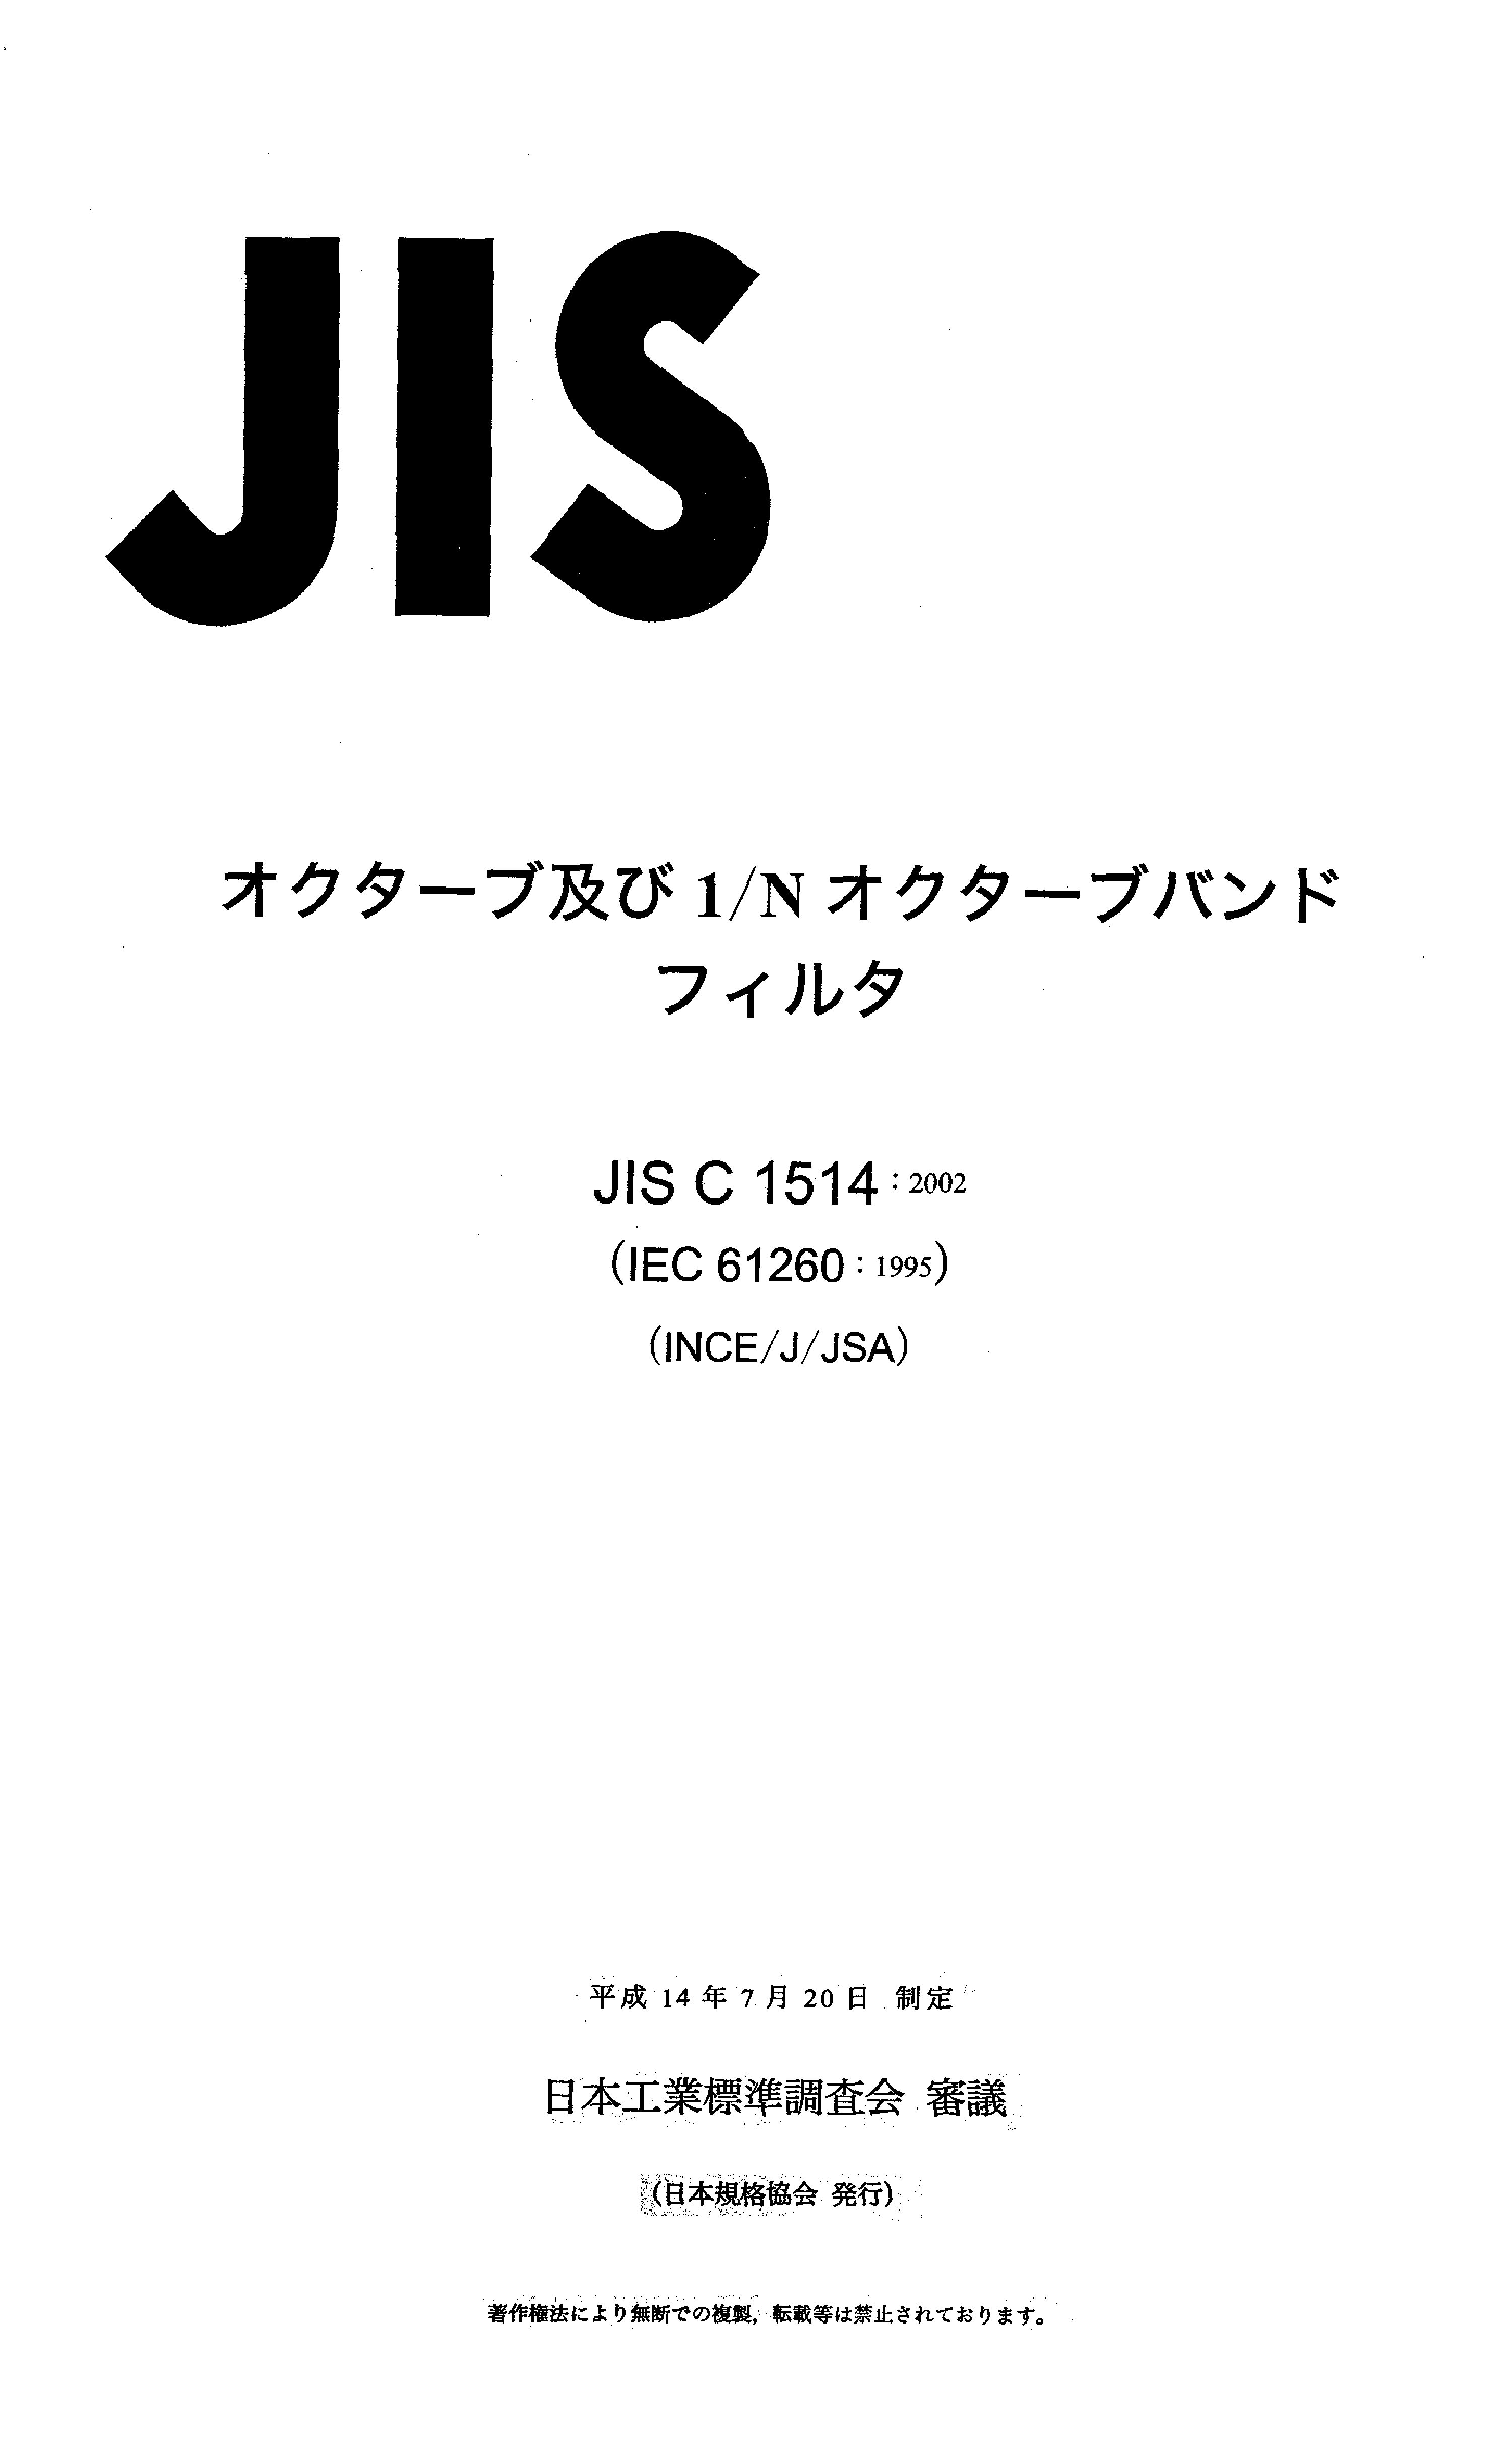 JIS C 1514:2002封面图